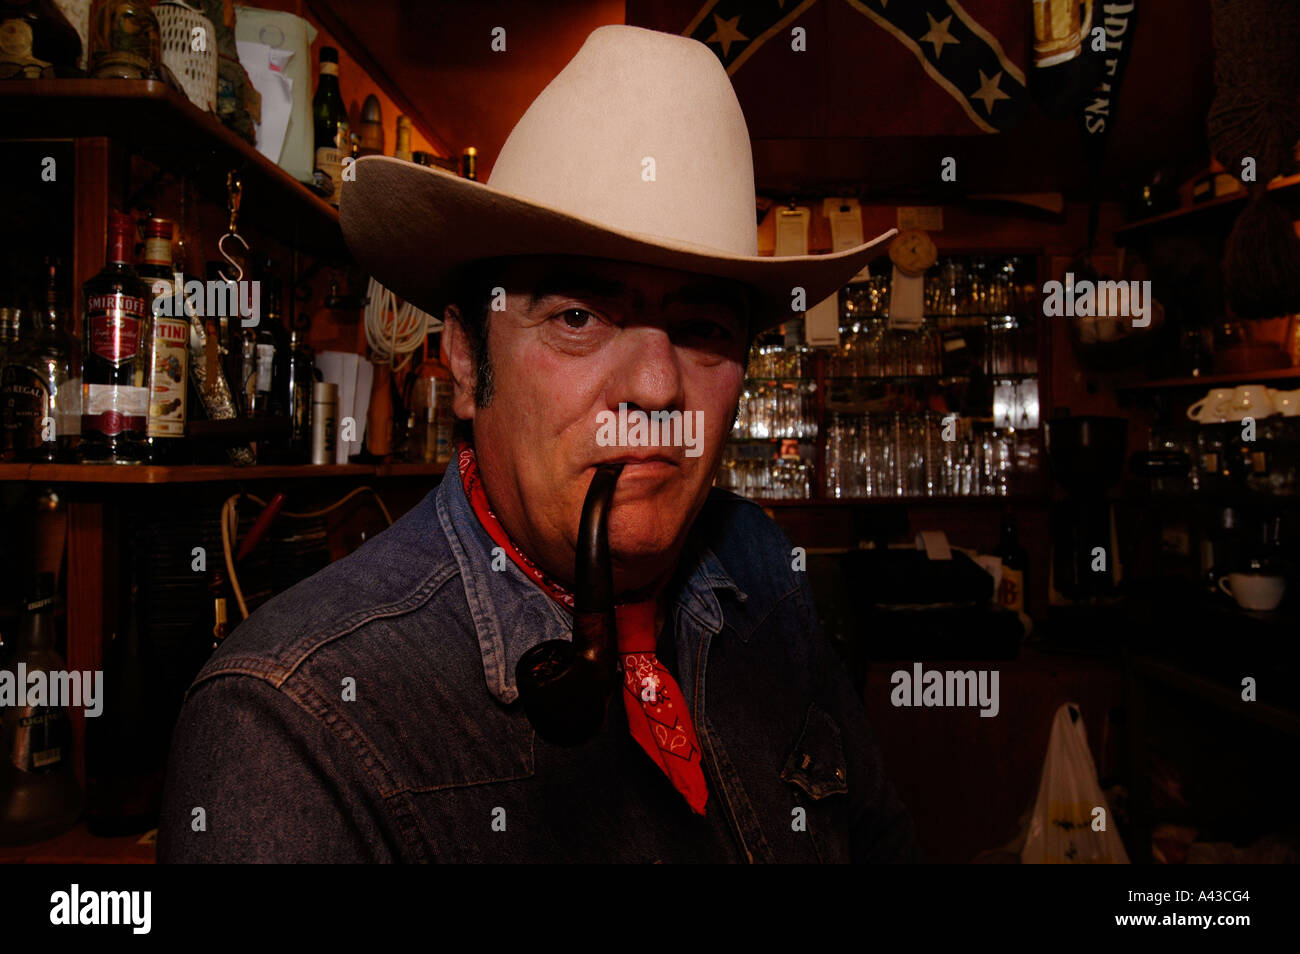 Un uomo israeliano che indossa un cappello da cowboy che fuma un tubo  dentro Un bar